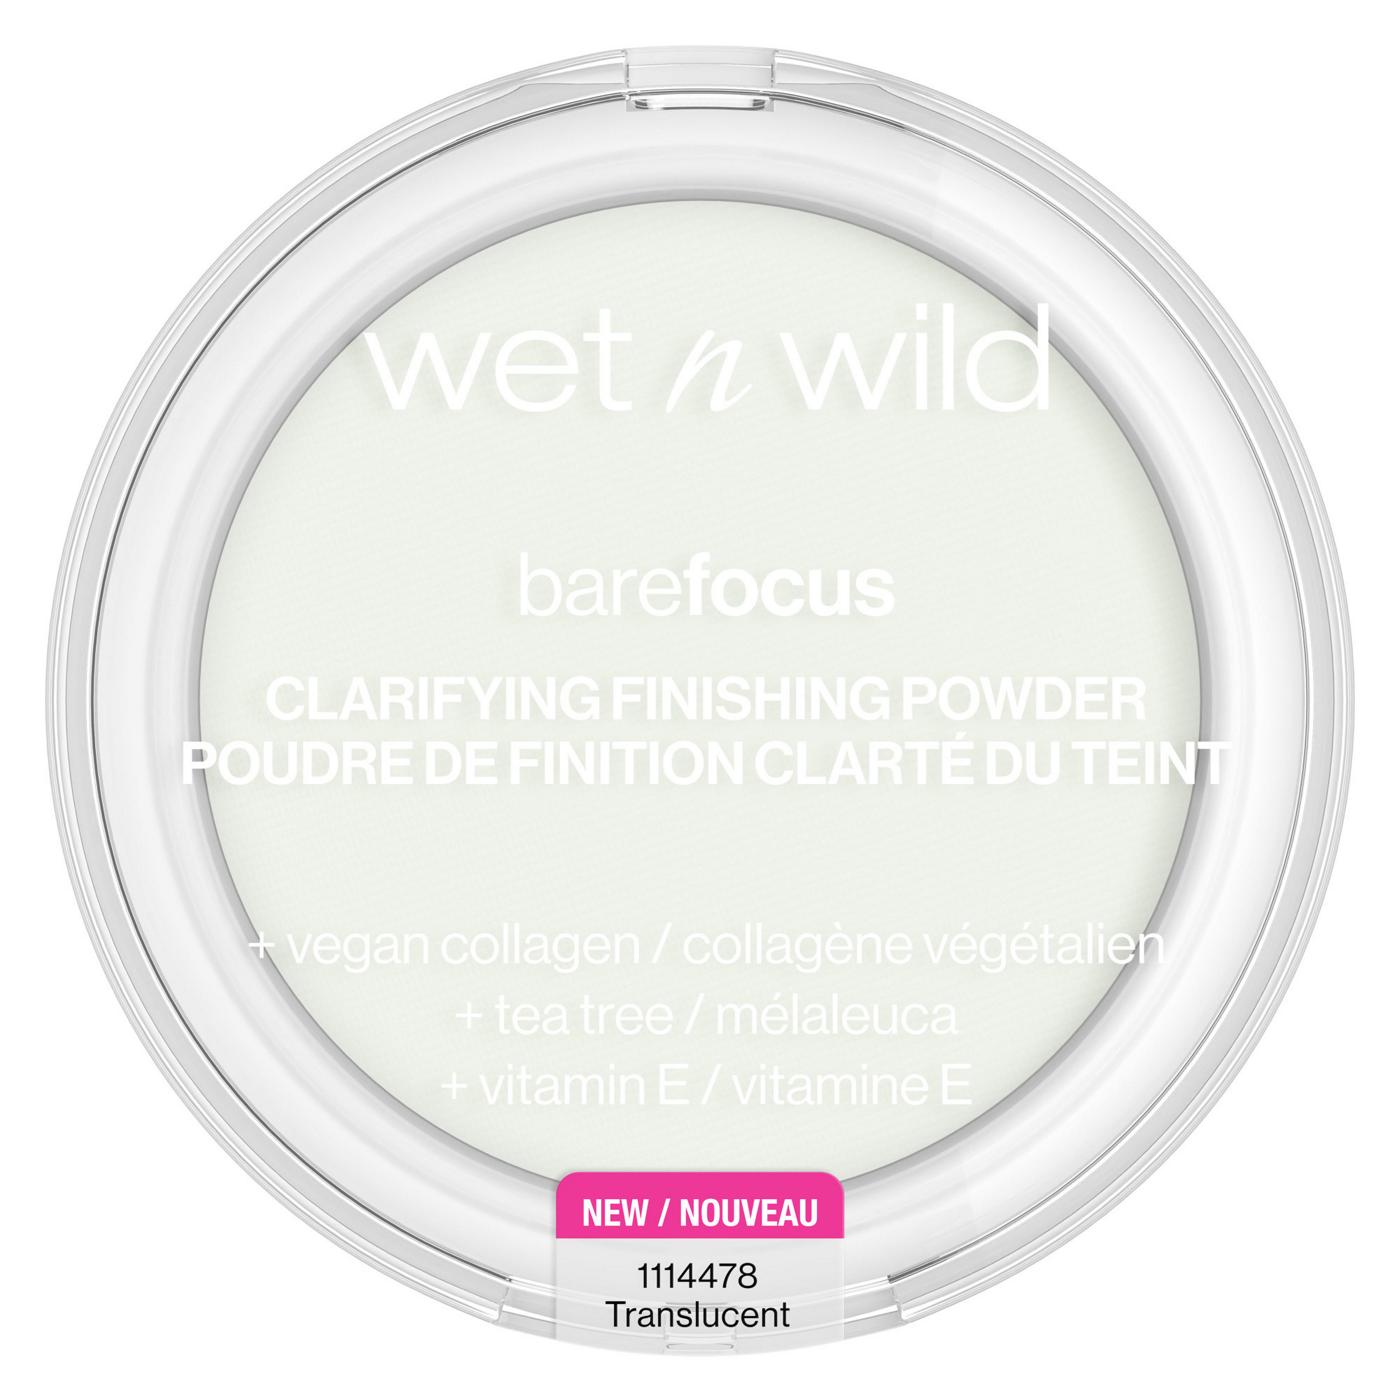 Wet n Wild Bare Focus Clarifying Finishing Powder Translucent; image 1 of 4